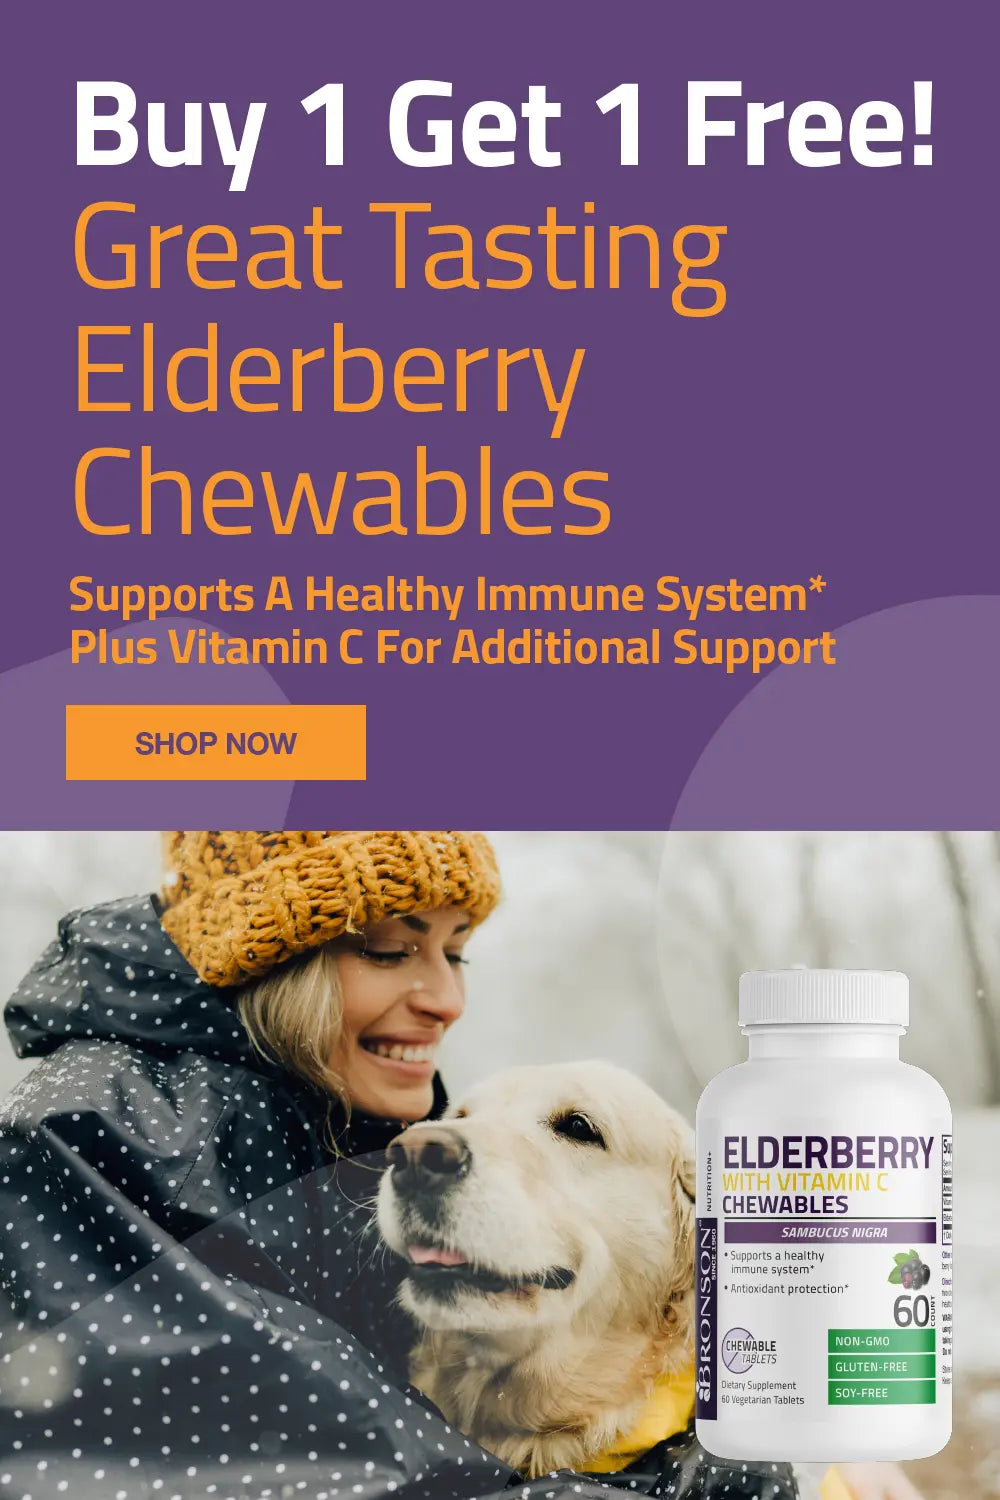 Buy 1 Get 1 Free! Great Tasting Elderberry Chewables